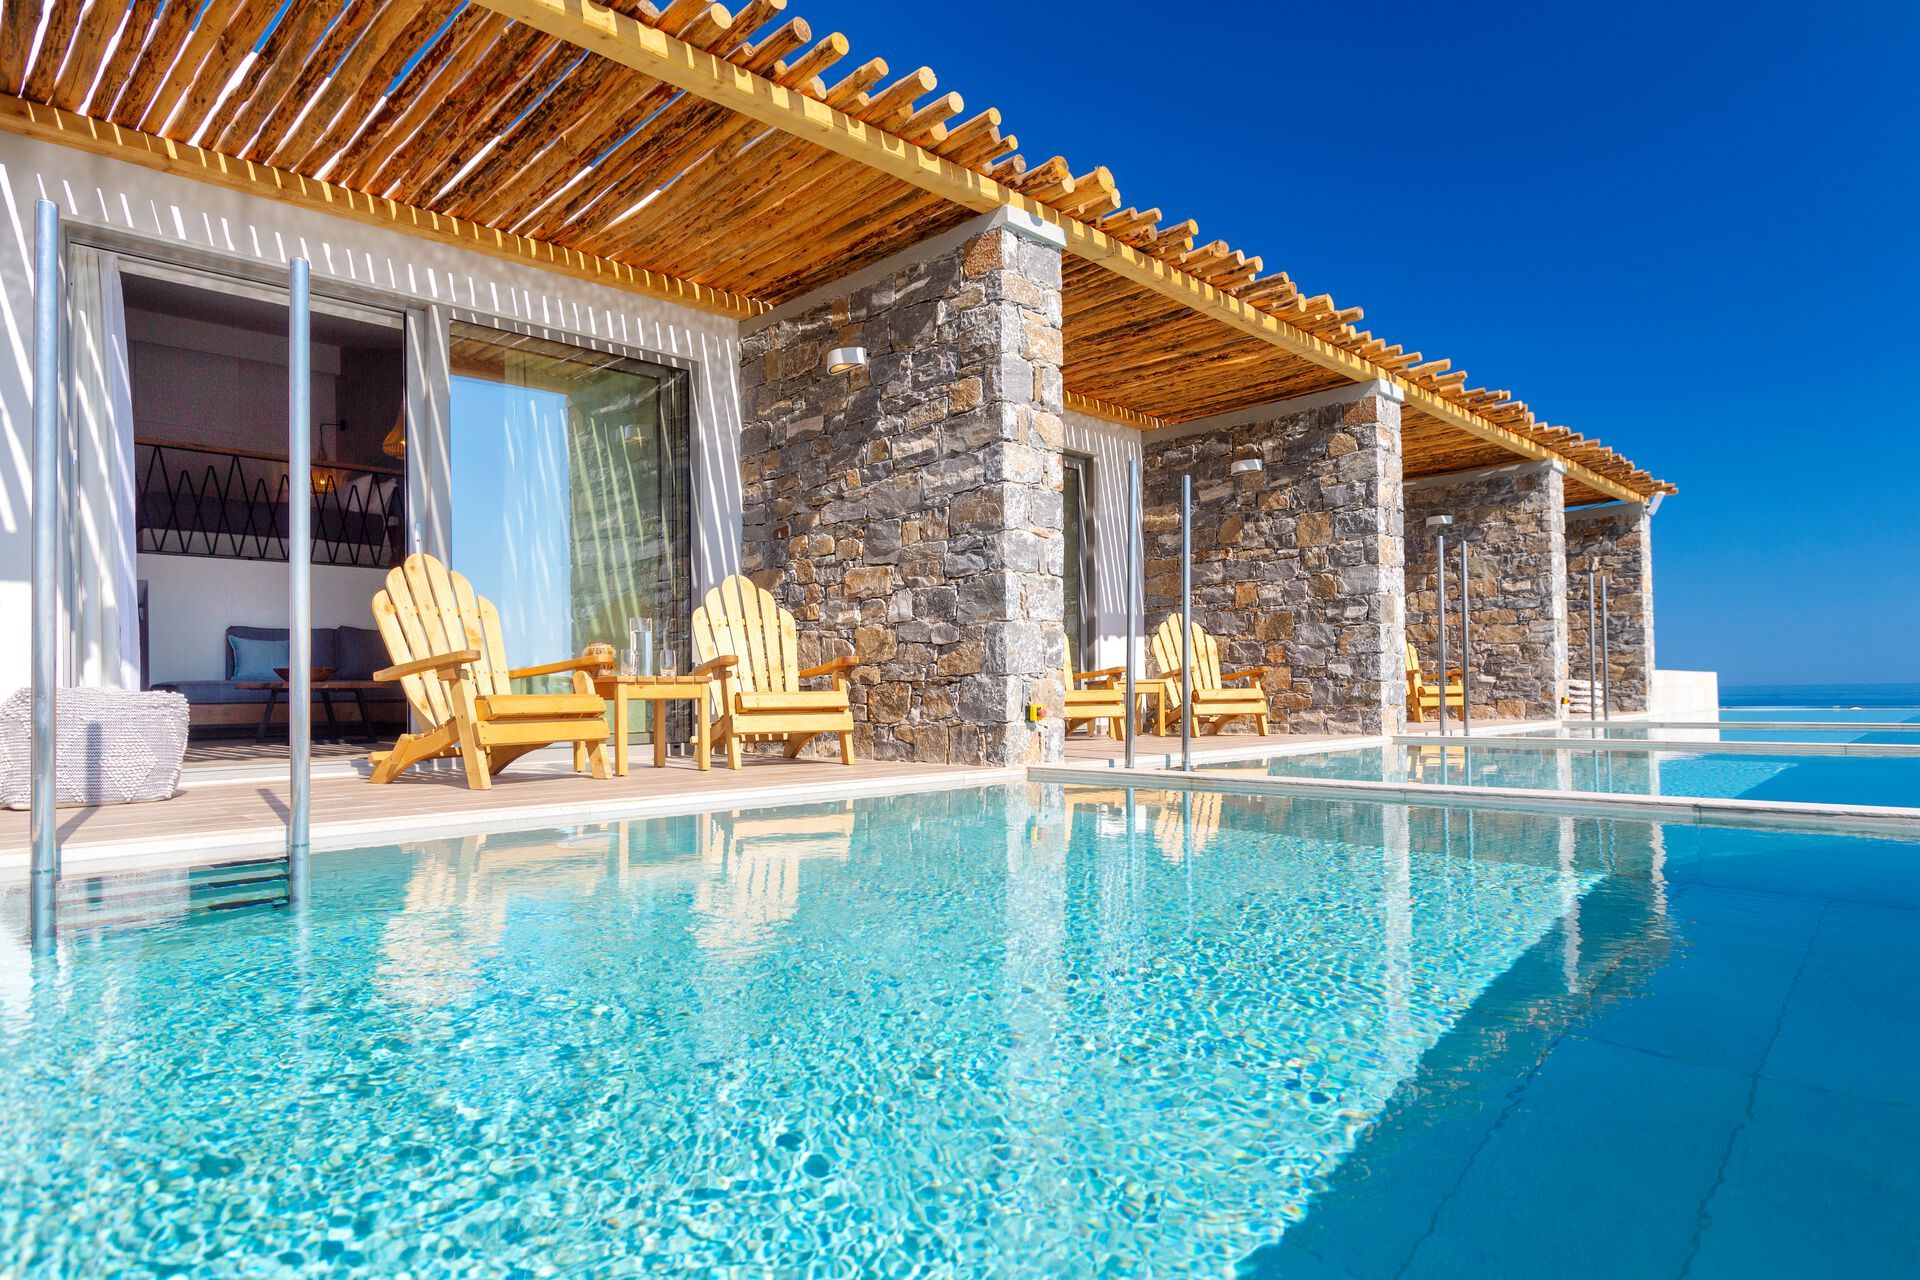 Crète - La Canée - Grèce - Iles grecques - Hôtel Atermono Boutique Resort & Spa 5*